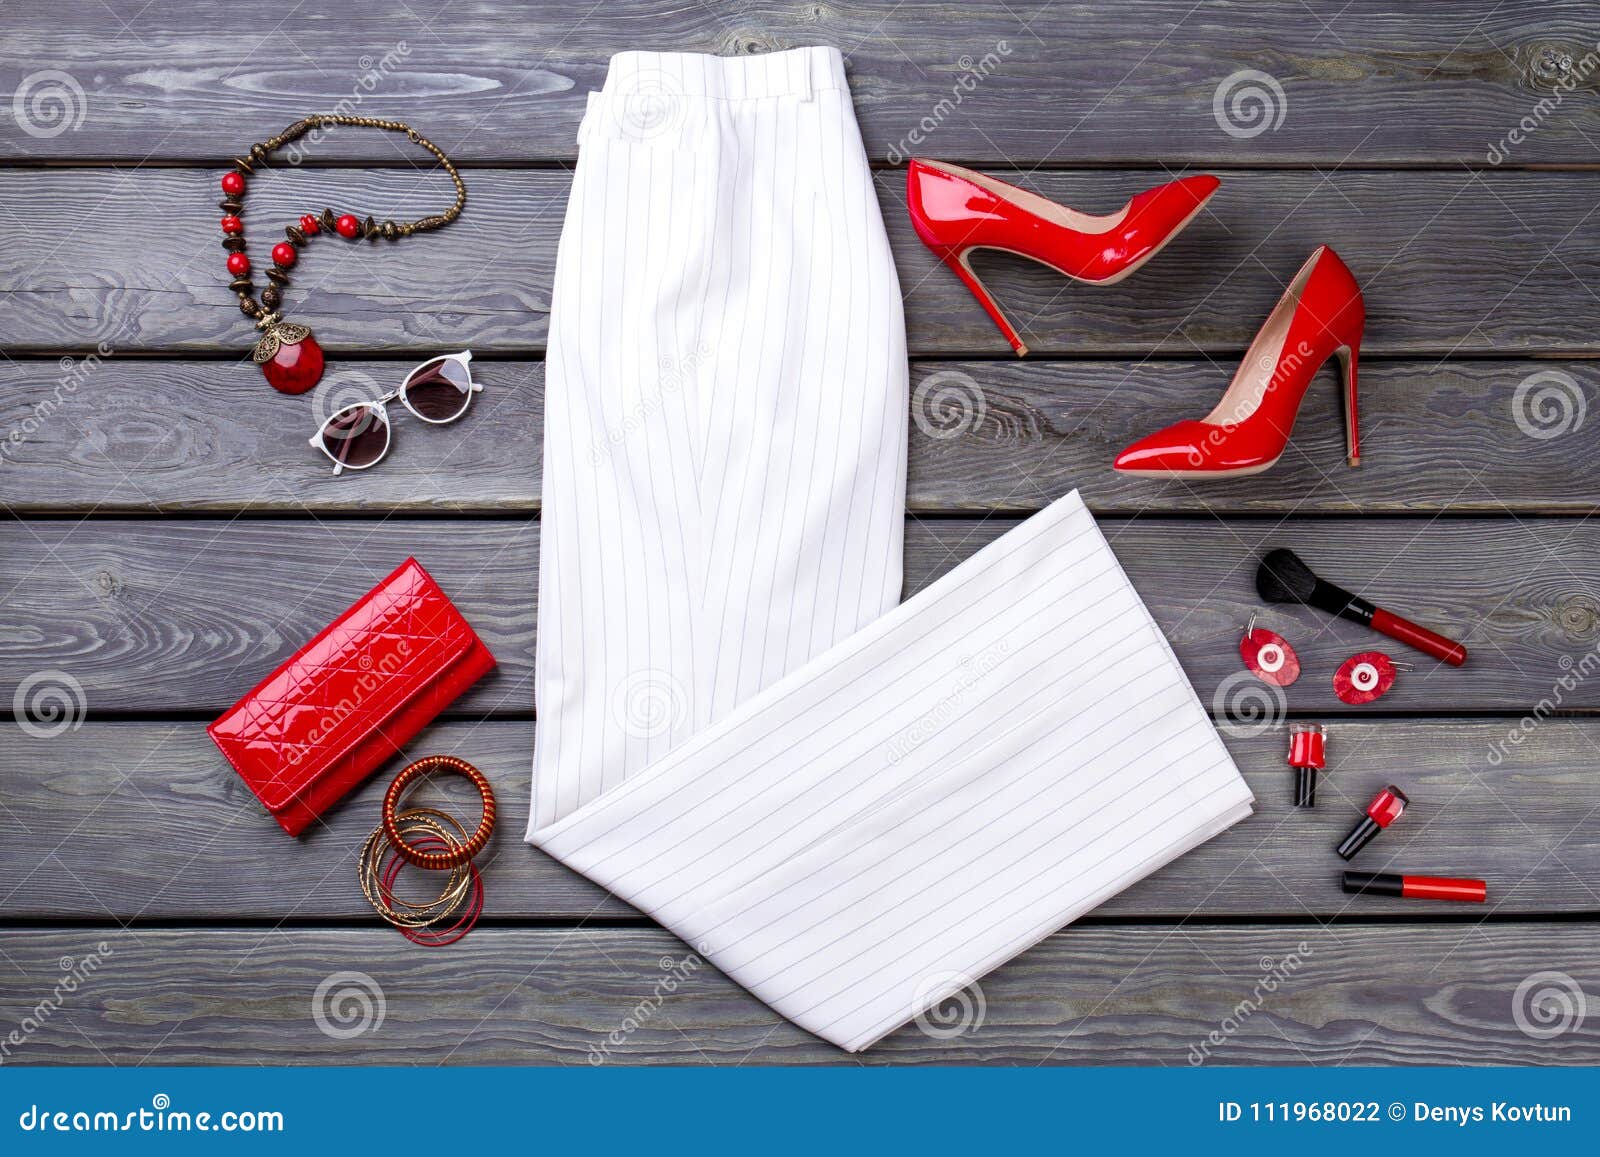 Flat Lay Female Clothing Arrangement. Stock Photo - Image of female ...